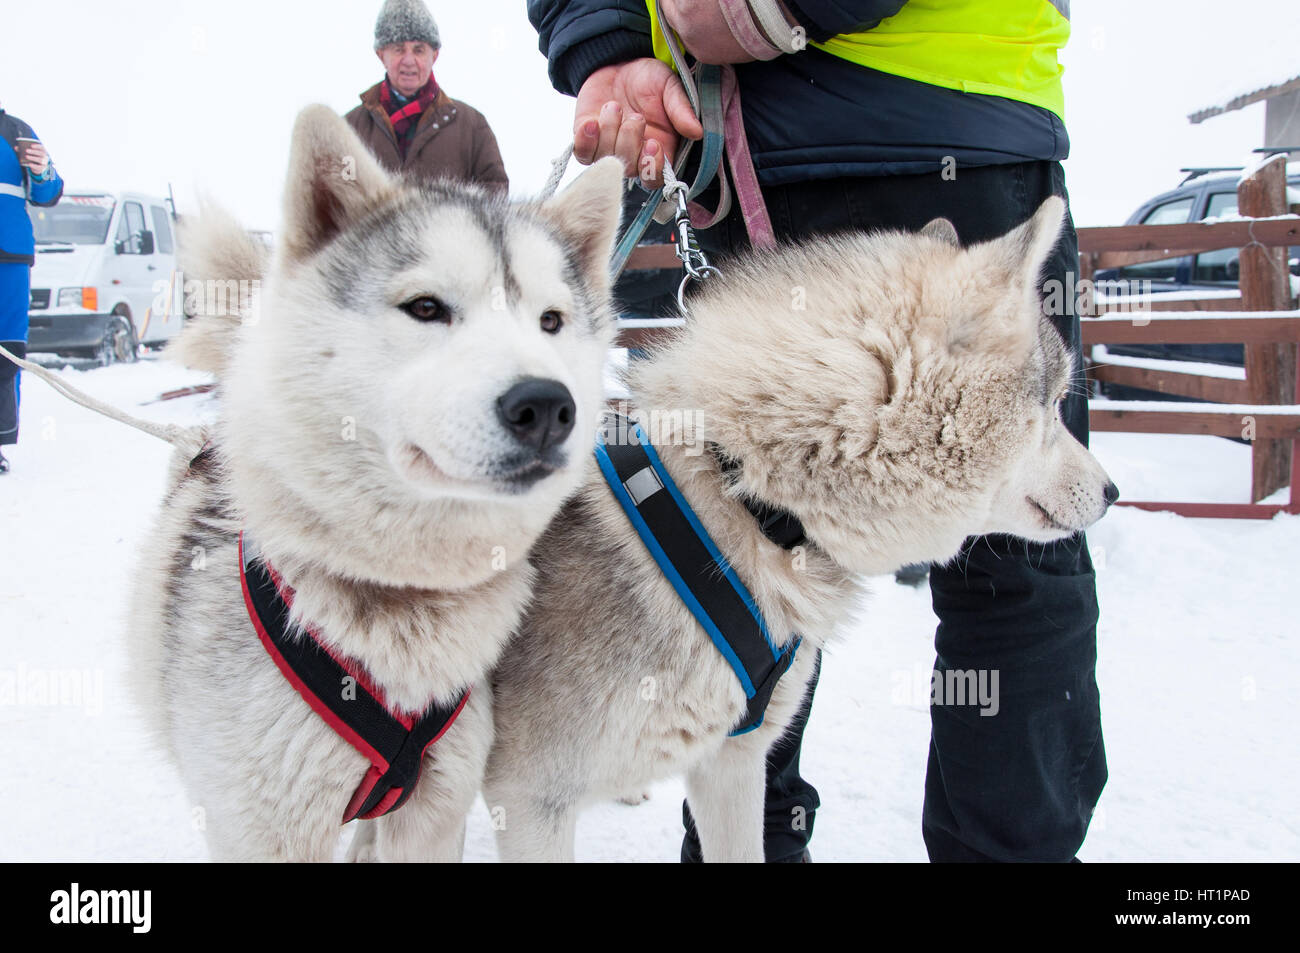 BELIS, Romania - 6 febbraio: Samoiedo cani pronte per lo start della prima slitta trainata da cani Racing Contest. Il 6 febbraio 2015 a Belis, Romania Foto Stock